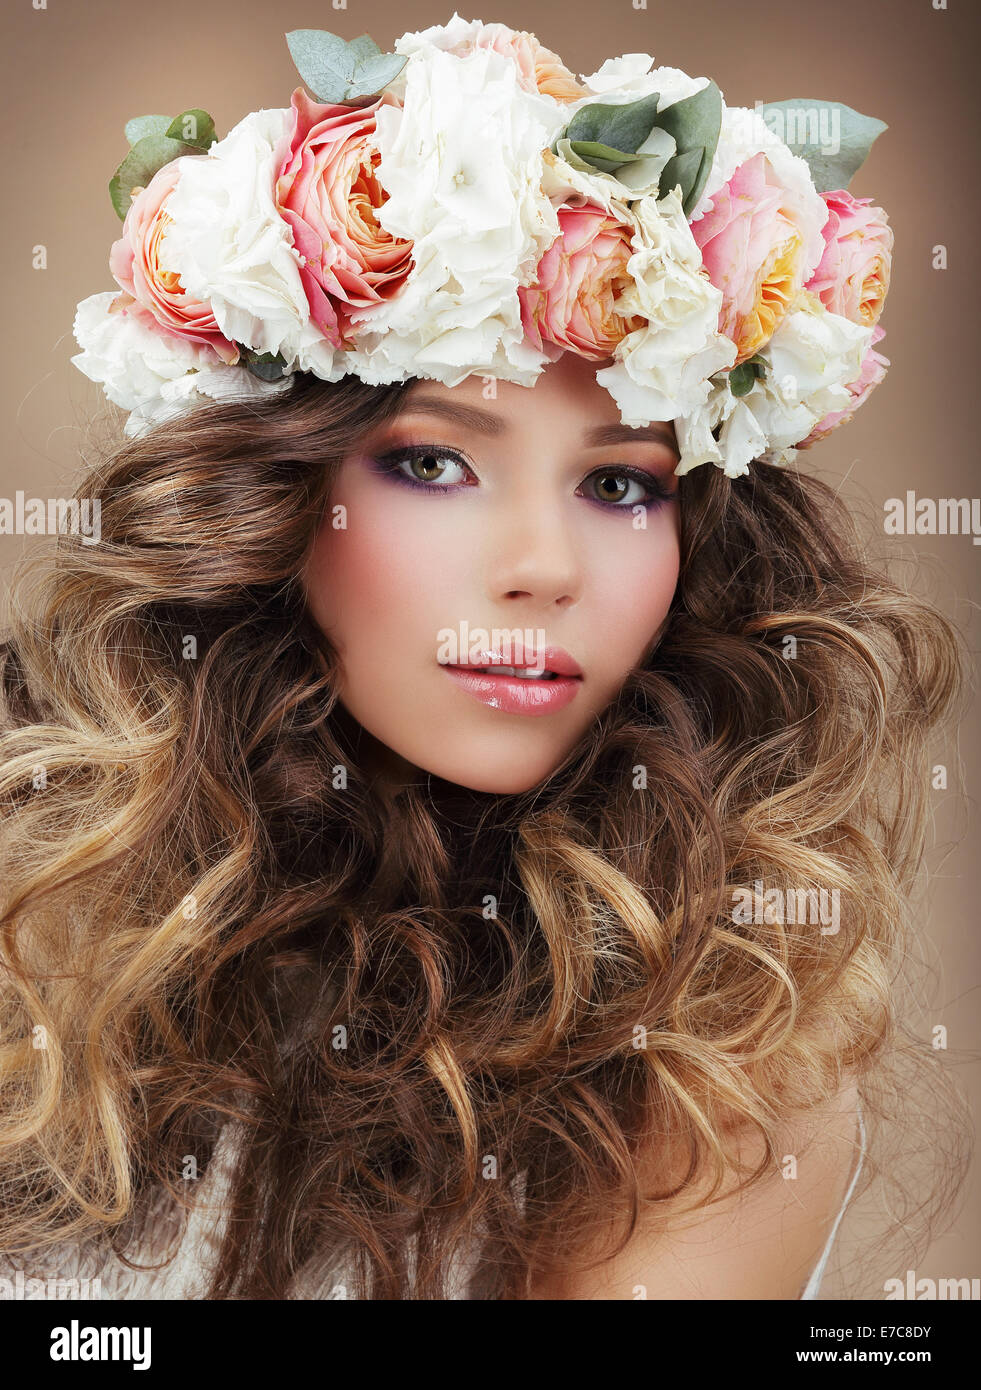 Femme romantique en guirlande de fleurs avec la peau parfaite et les cheveux crépus Banque D'Images